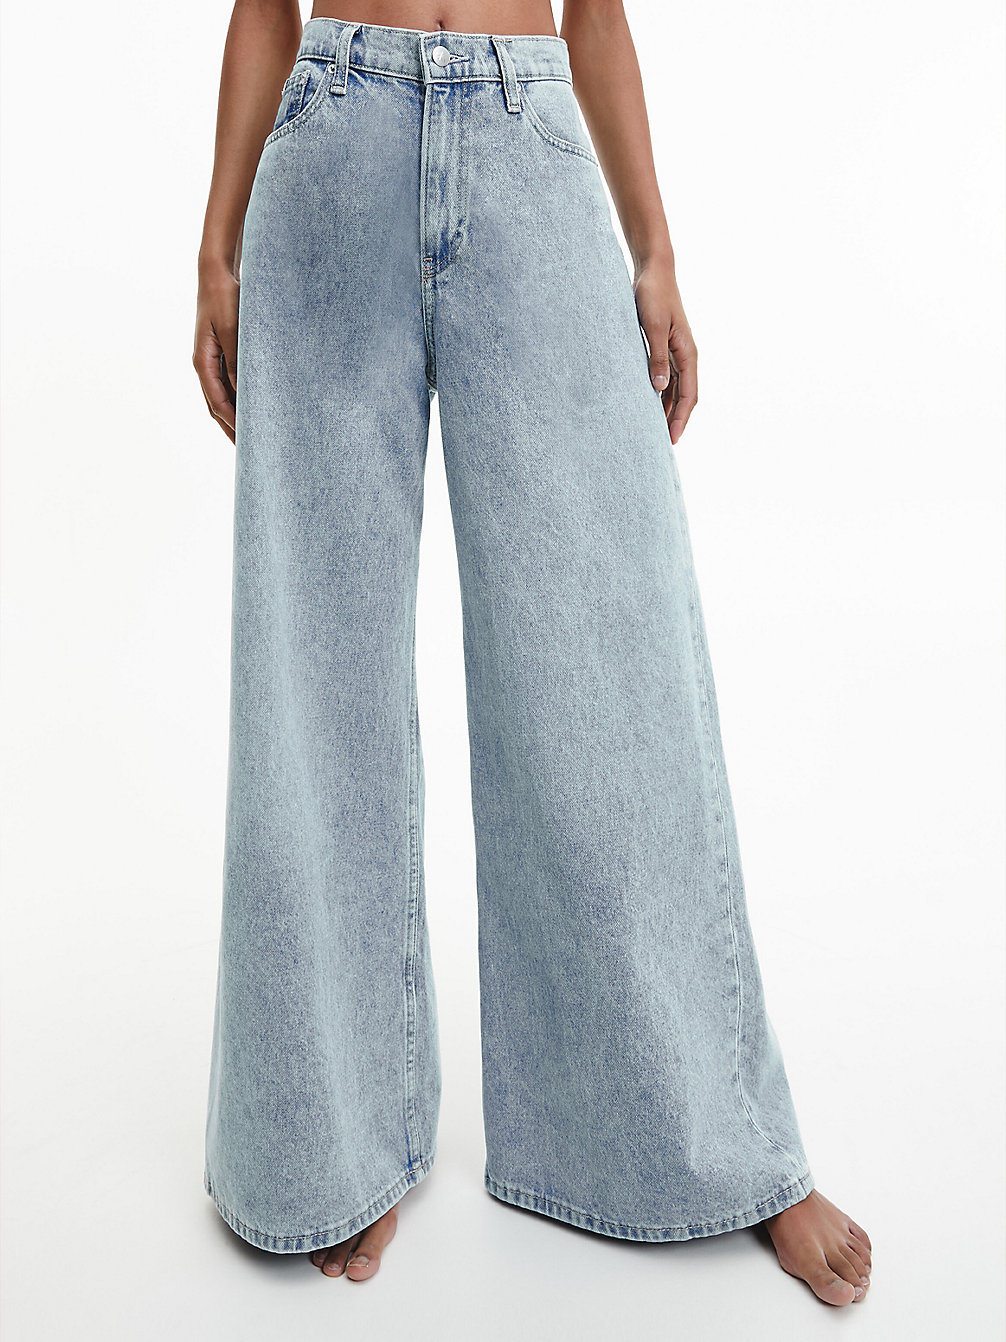 DENIM LIGHT > Свободные джинсы низкой посадки > undefined Женщины - Calvin Klein